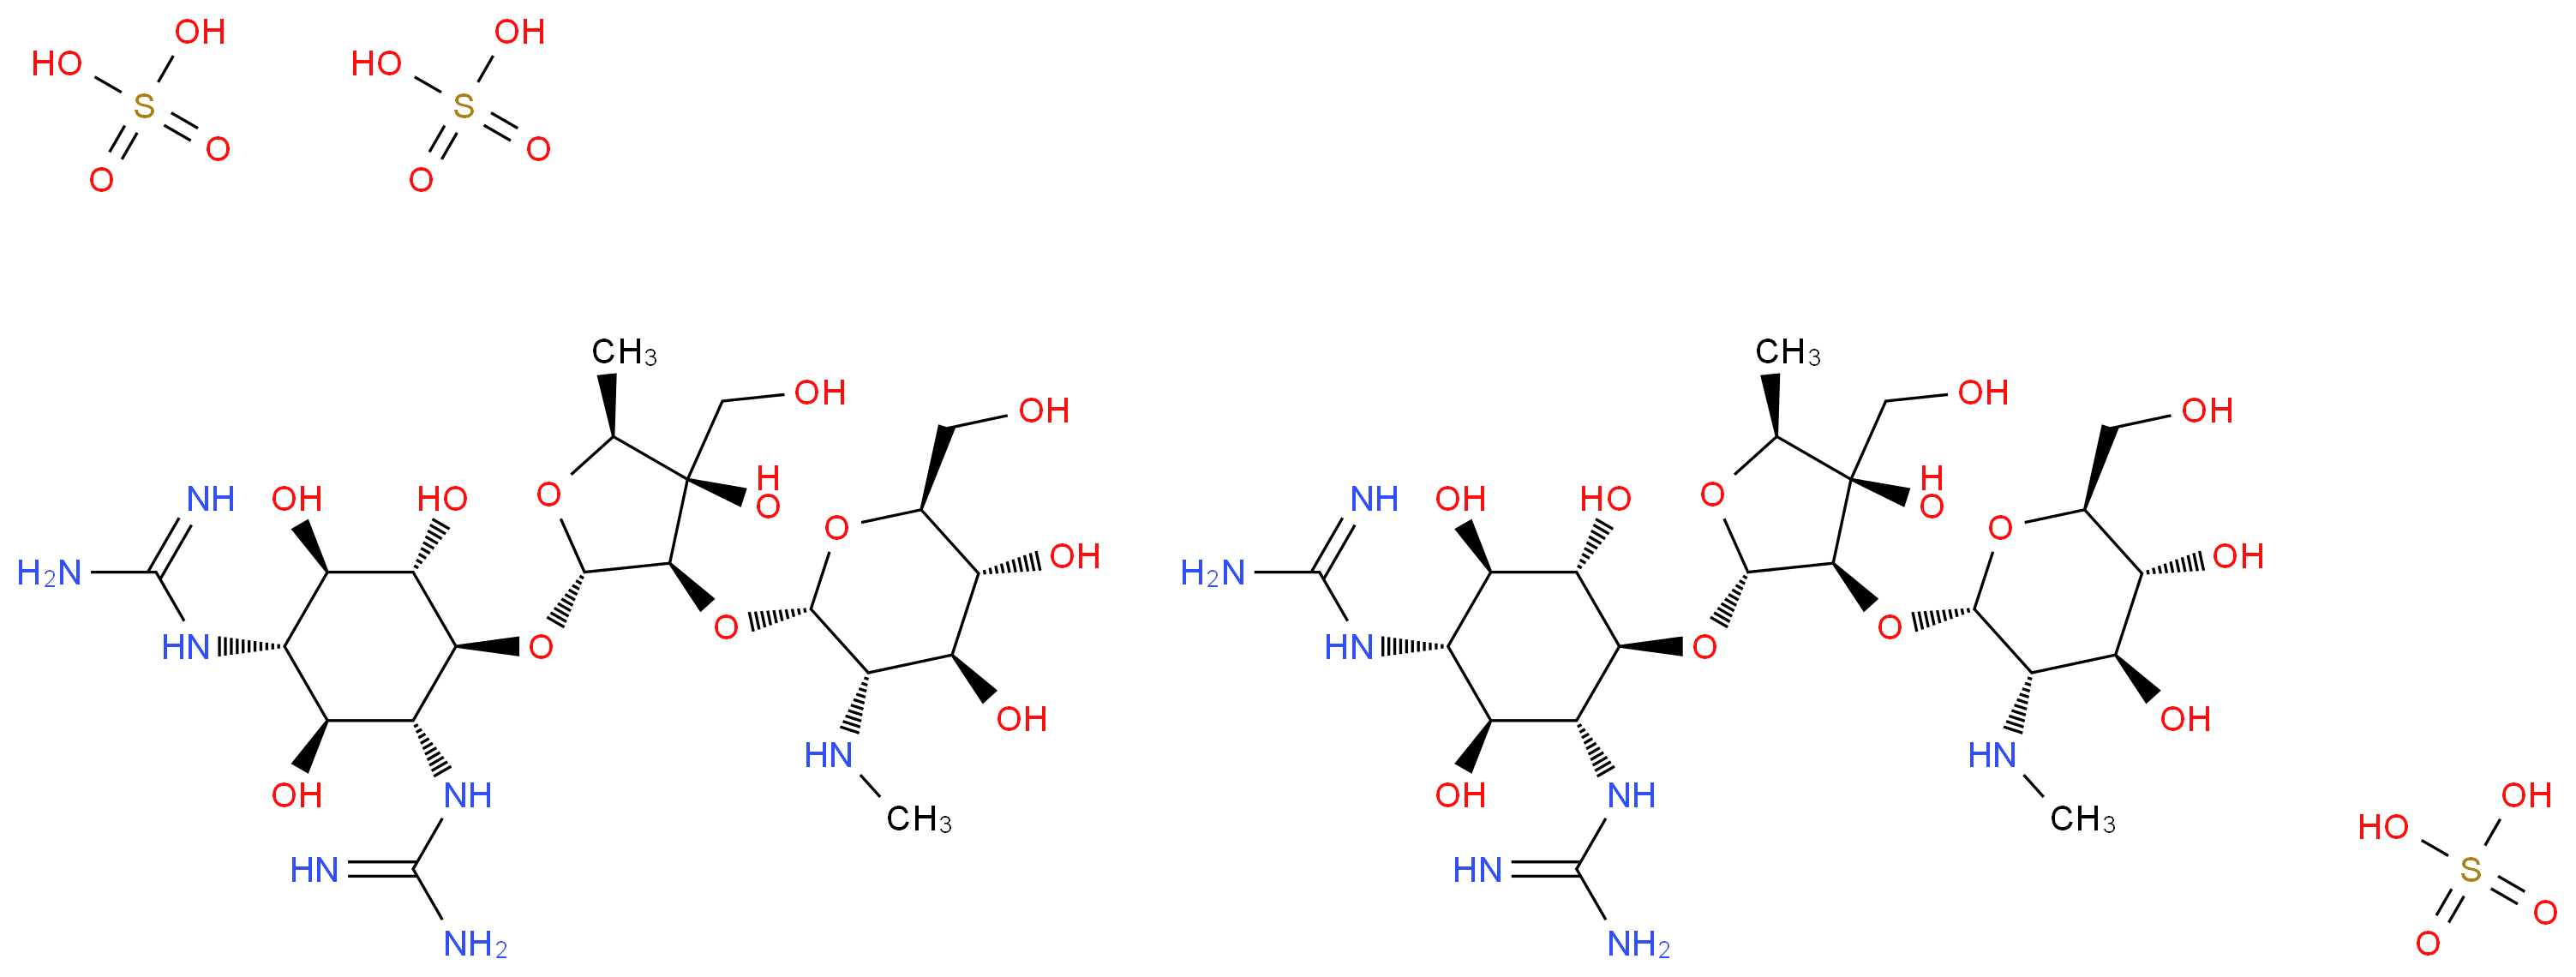 1,1'-((1S,2S,3R,4S,5S,6R)-4-(((2R,3R,4R,5S)-3-(((2S,3S,4S,5R,6S)-4,5-dihydroxy-6-(hydroxymethyl)-3-(methylamino)tetrahydro-2H-pyran-2-yl)oxy)-4-hydroxy-4-(hydroxymethyl)-5-methyltetrahydrofuran-2-yl)o
xy)-2,5,6-trihydroxycyclohexane-1,3-diyl)diguanidine se
squisulfate_分子结构_CAS_)